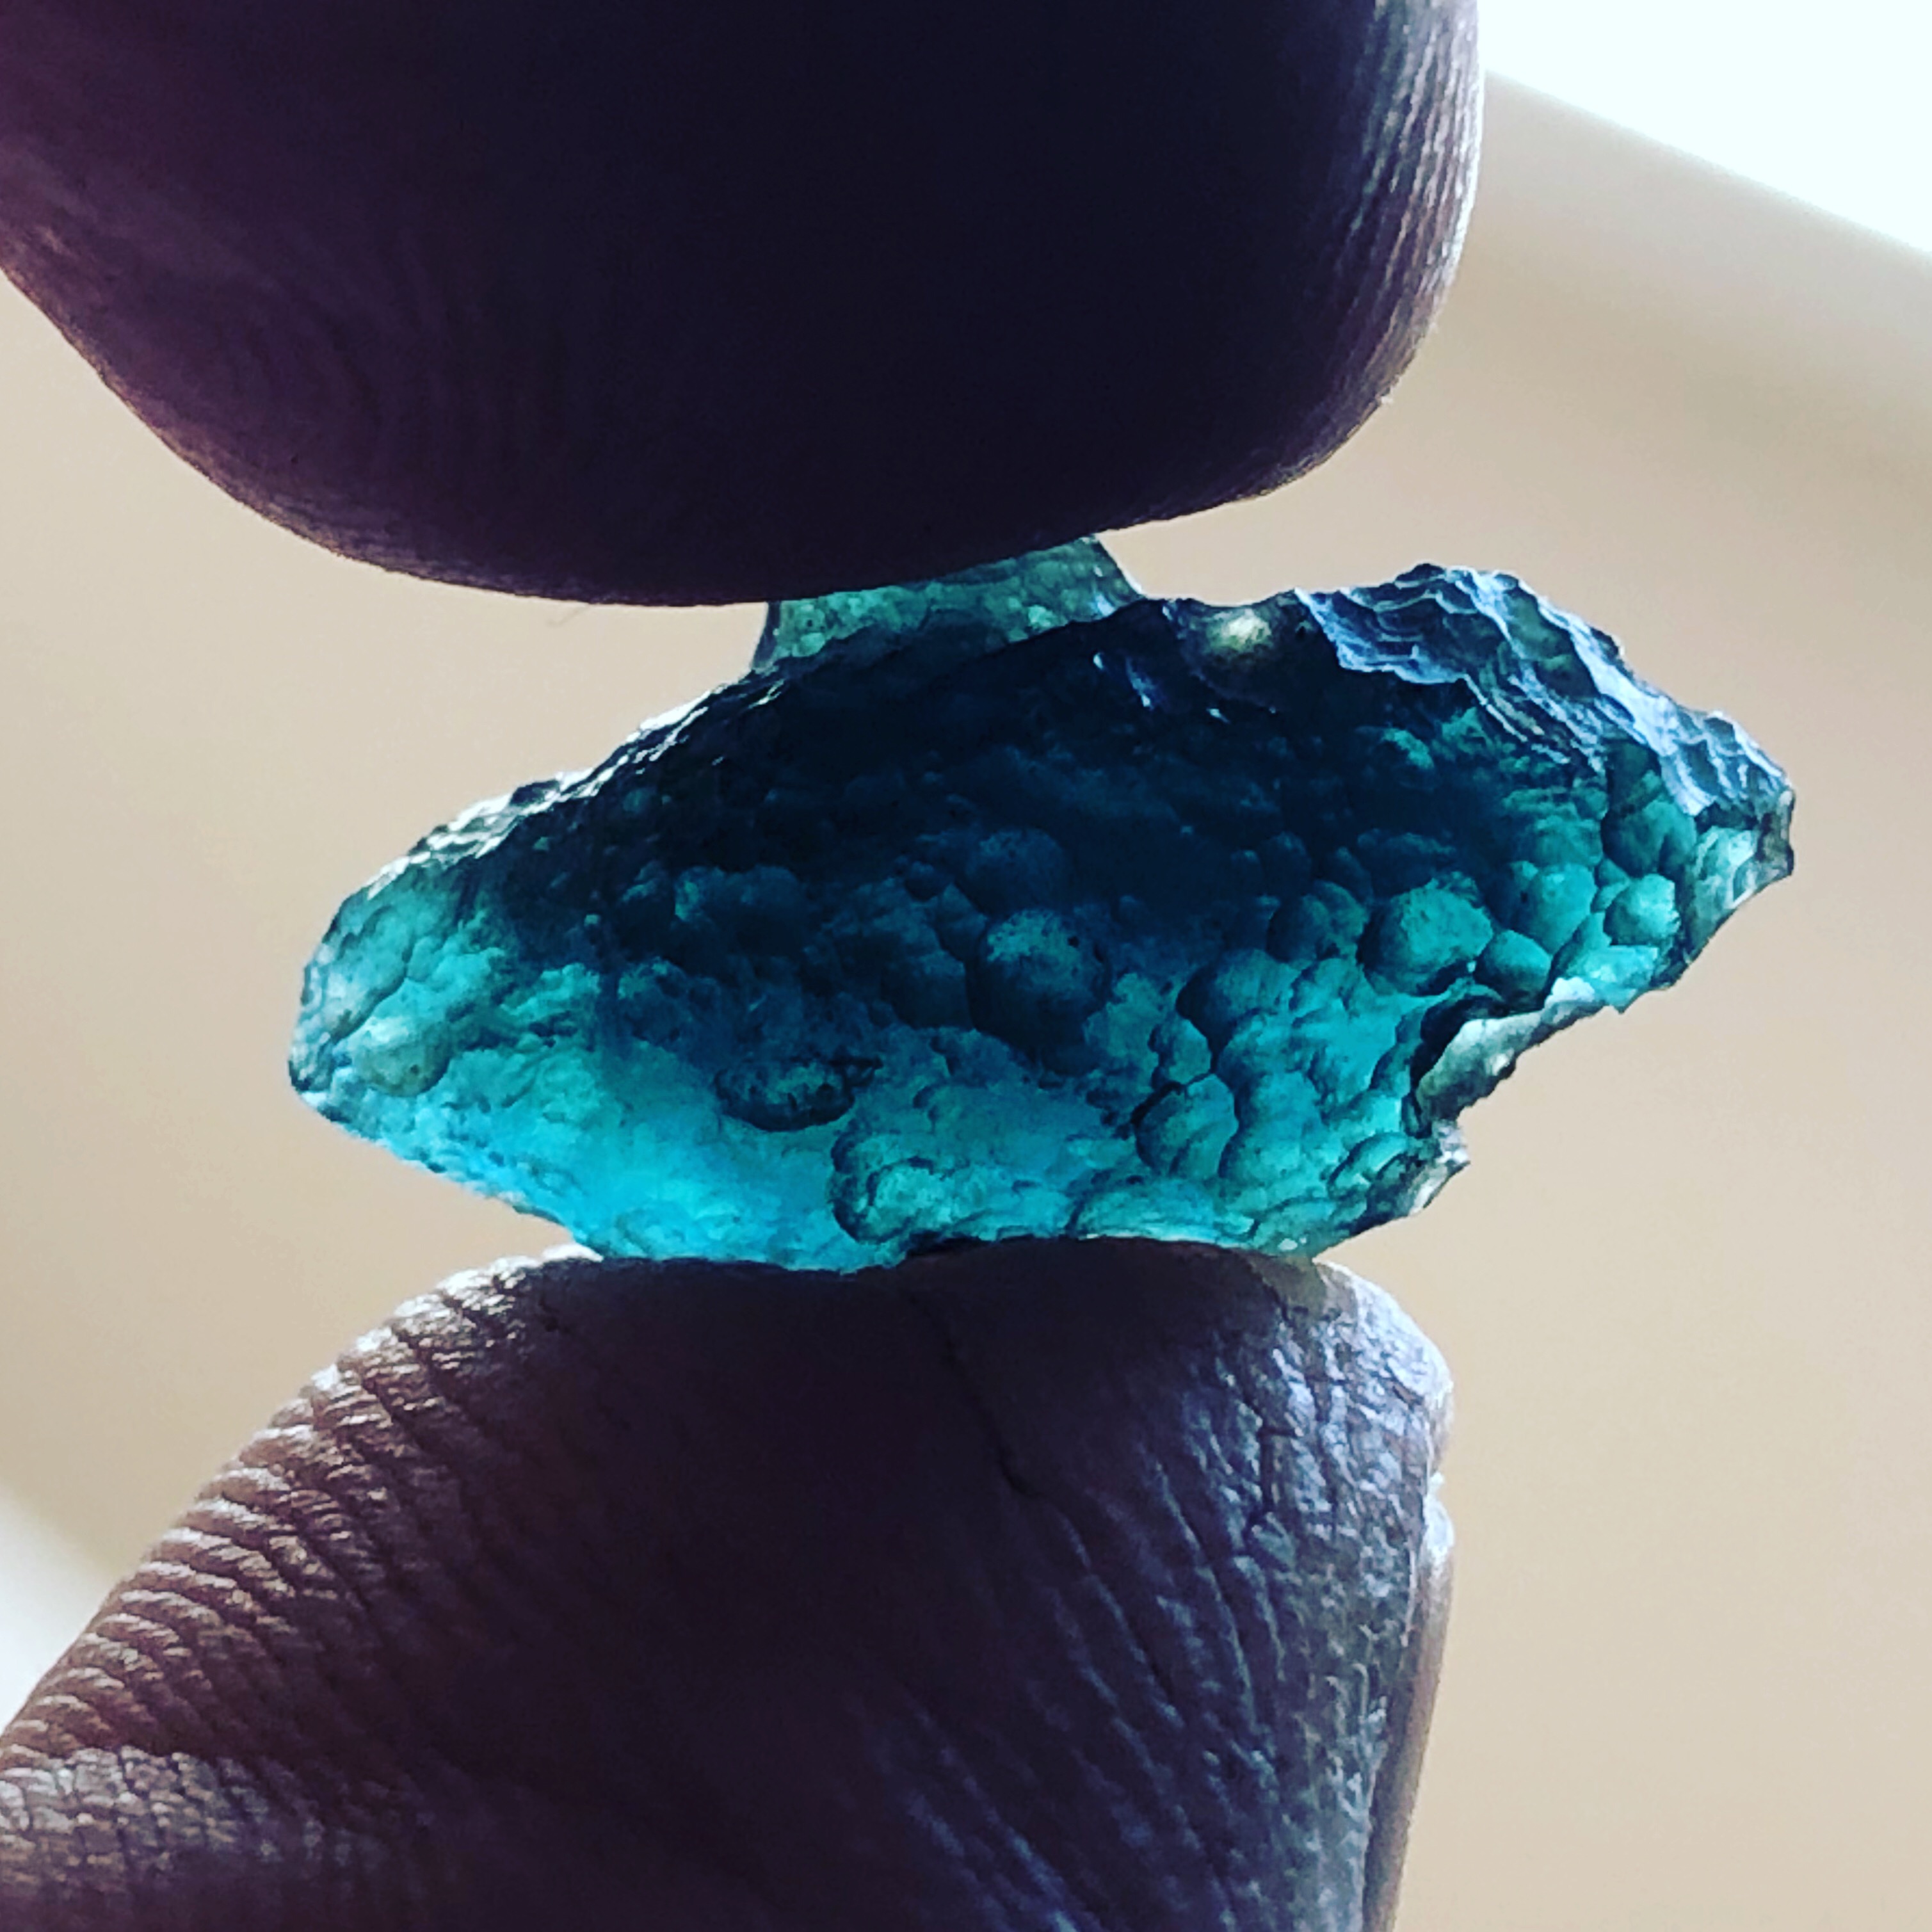 1.8g Blue Moldavite found south of Moravske Budejovice